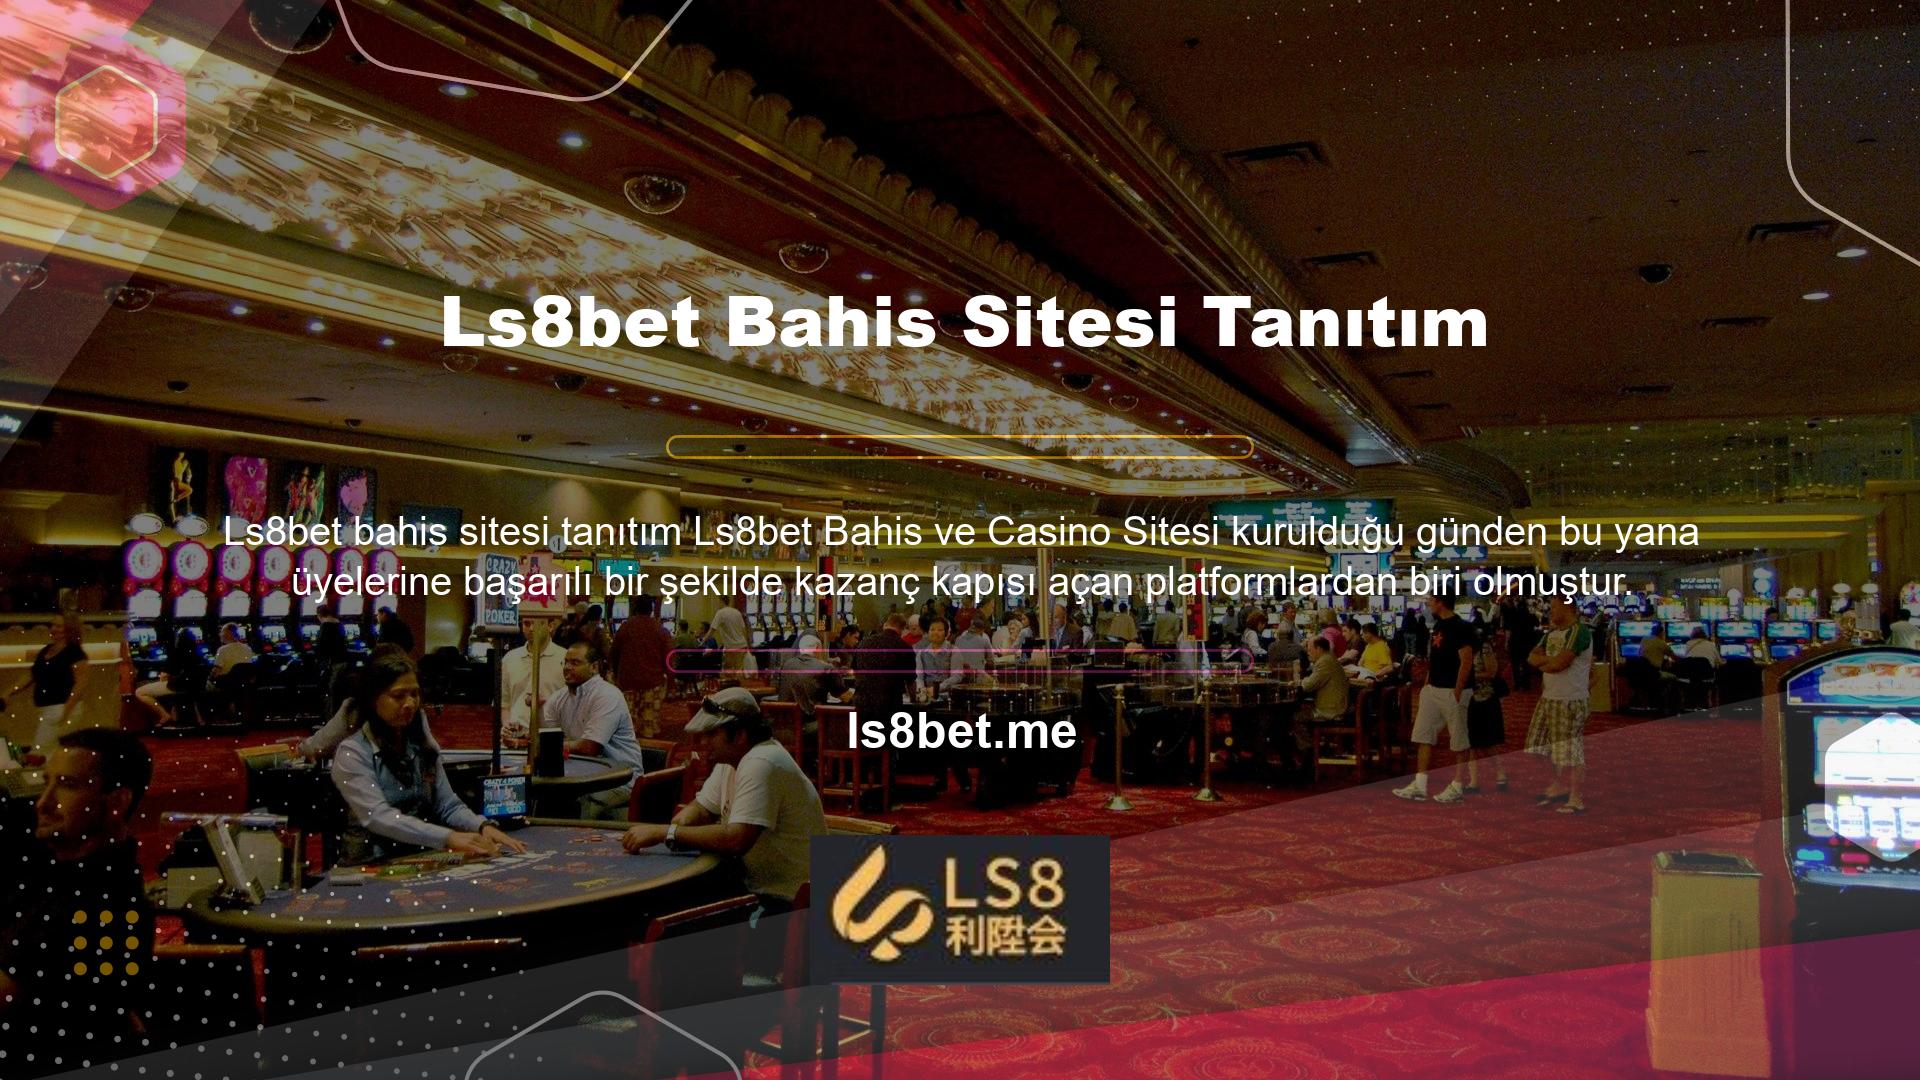 Türkiye'nin en popüler bahis platformlarından biri olan Ls8bet, Türkiye bahis pazarına büyük bir reklamla girmiş ve hızla büyümüştür